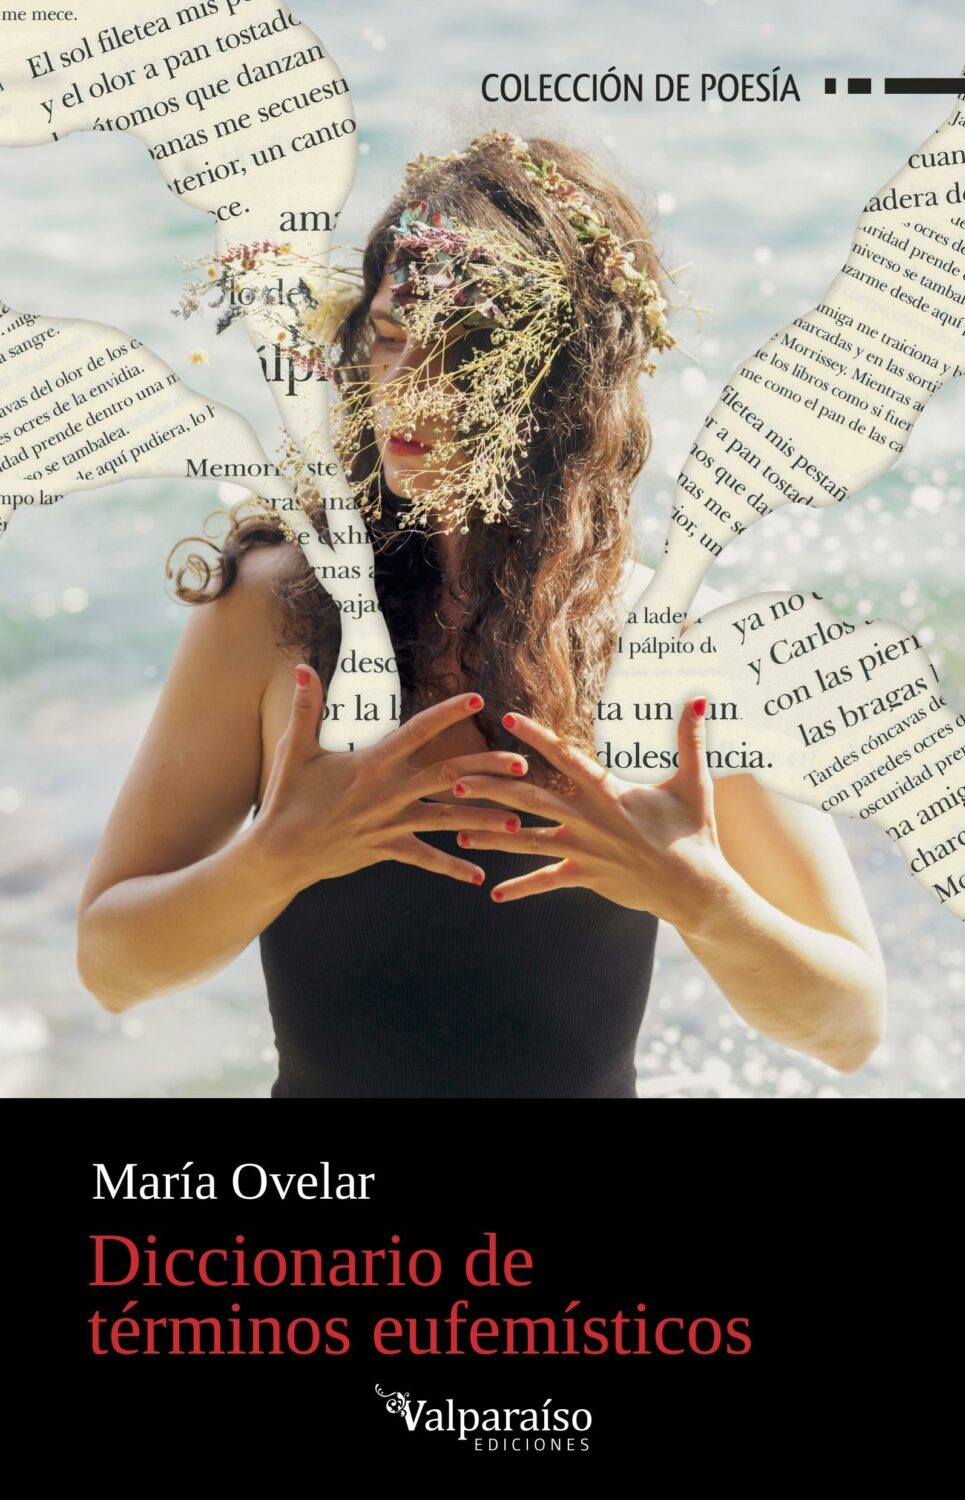 María Ovelar. Diccionario de términos eufemísticos